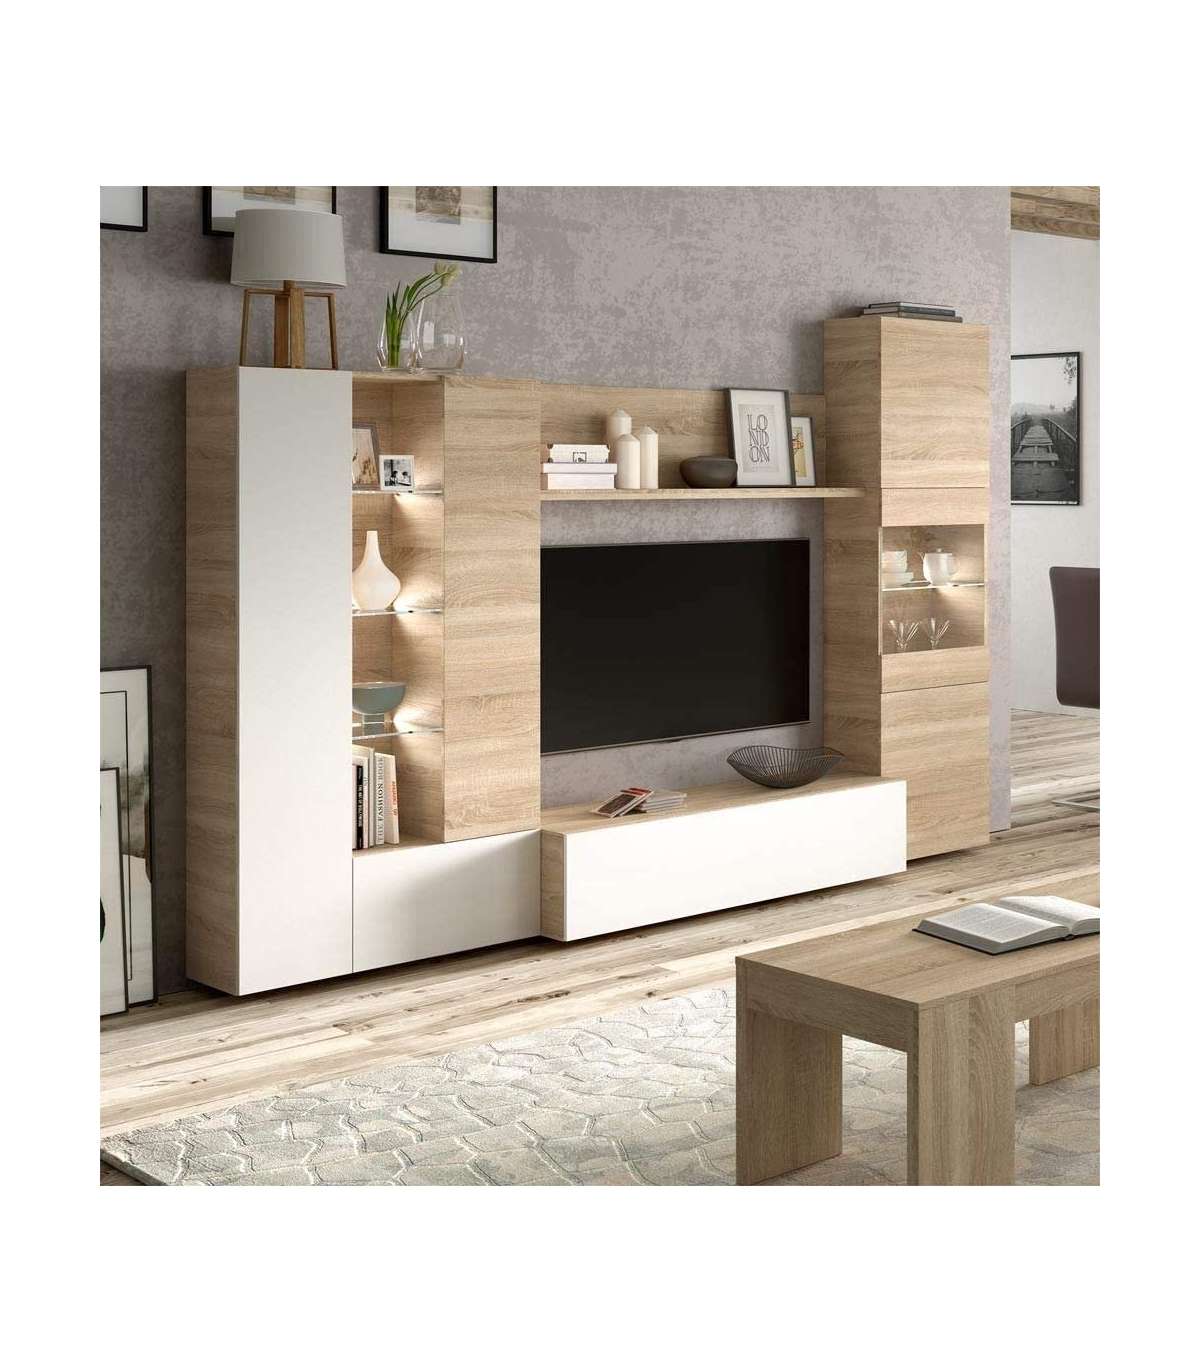 Mueble auxiliar de madera ESTEFANIA blanco, Diseño Juvenil